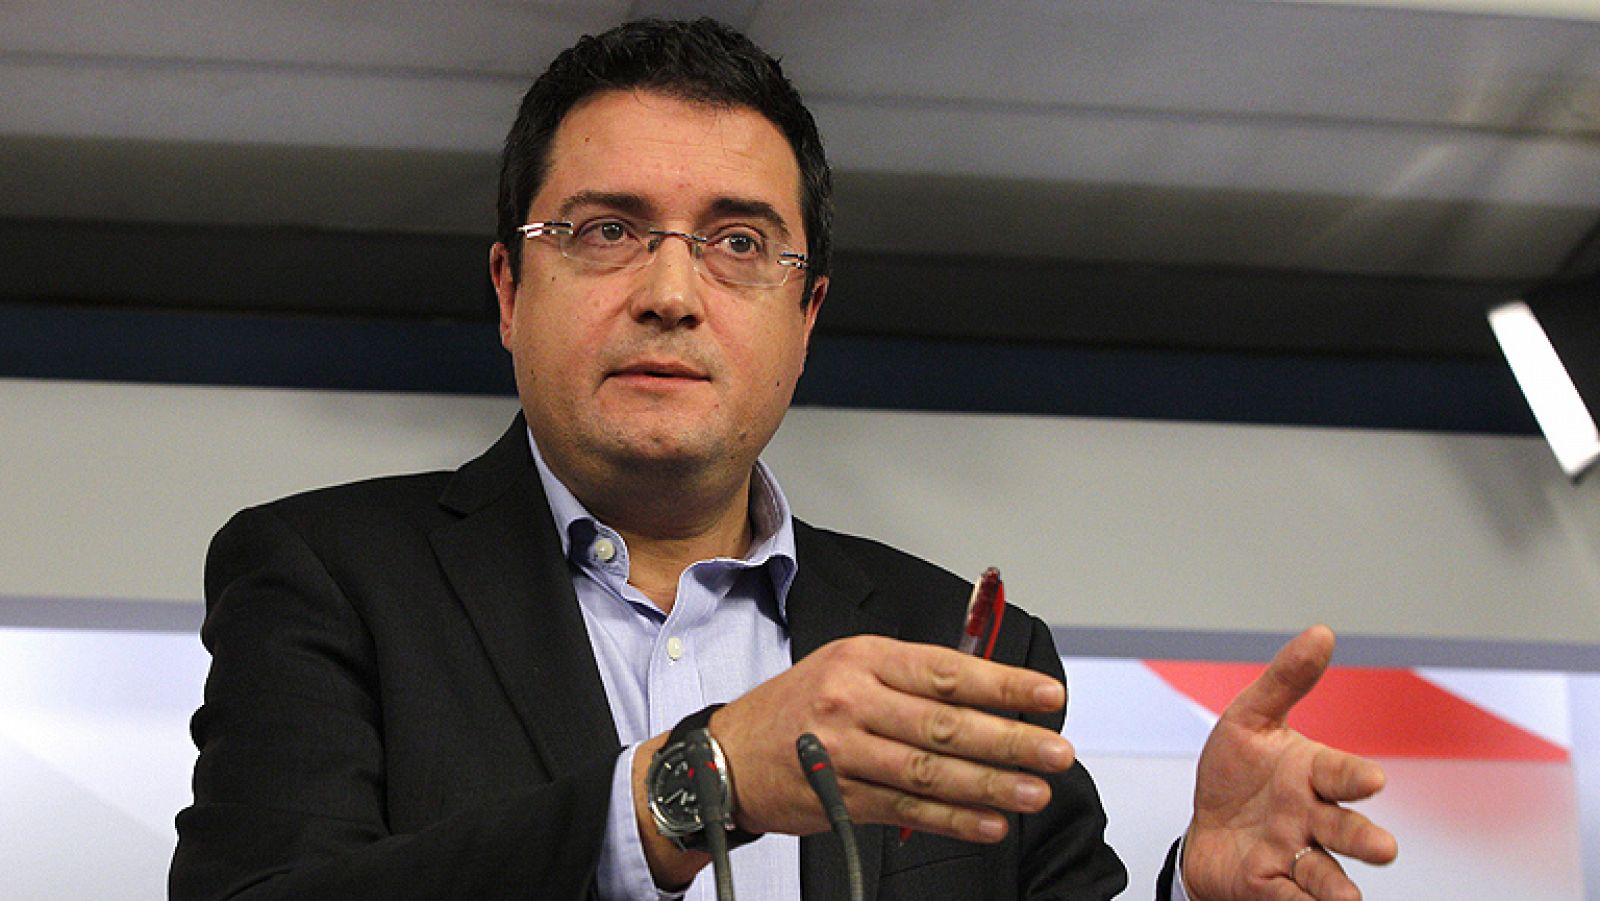 Óscar López cree que la posición de Rajoy es "insostenible y débil" y debe dejar el cargo